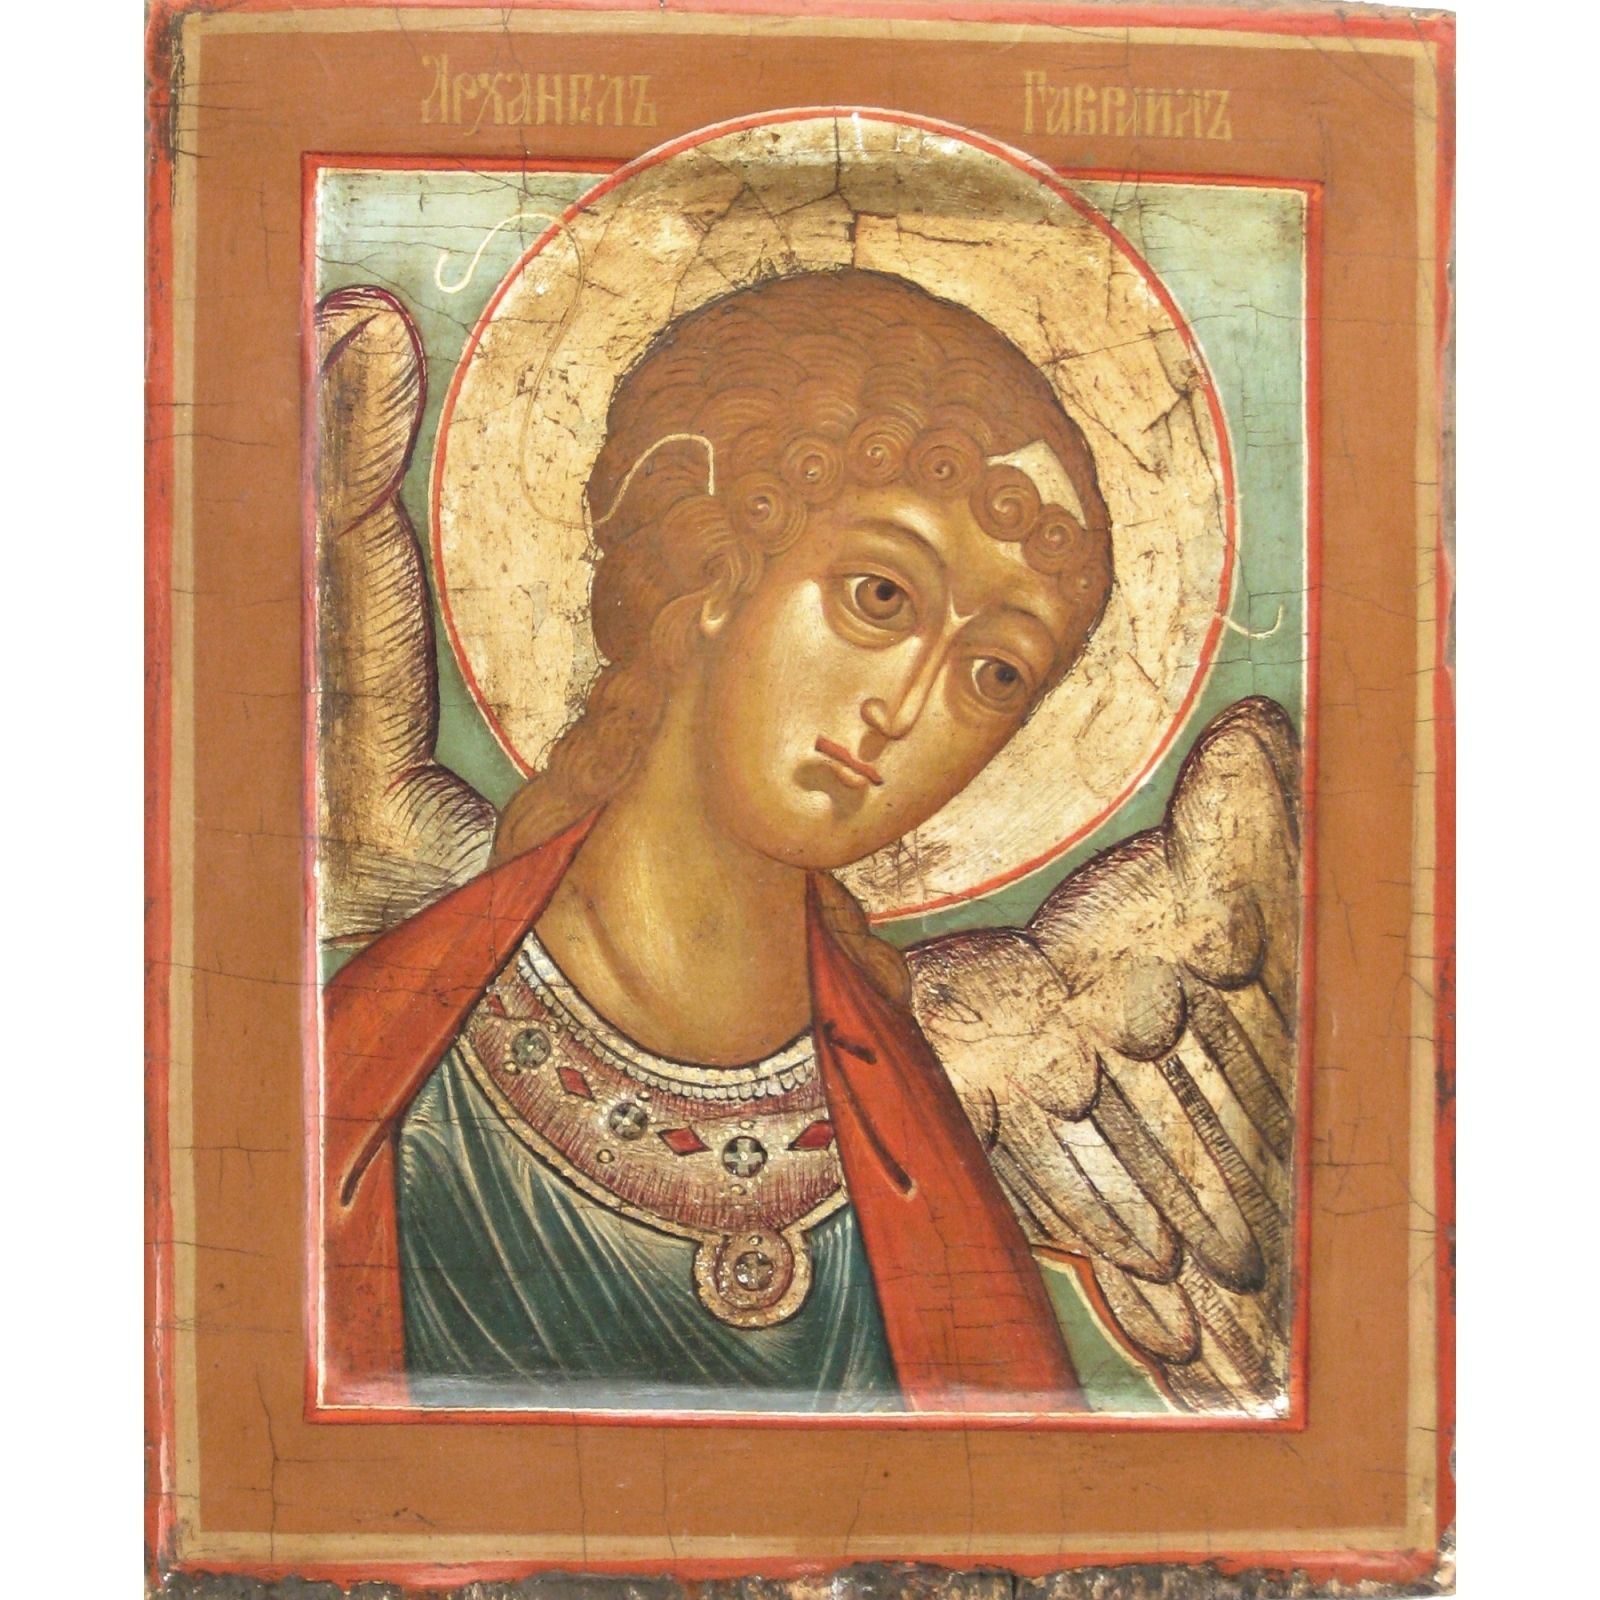 Null 描绘 "大天使圣加布里埃尔 "的俄罗斯圣像。20世纪初。蛋彩画，以米色为背景。Cm 27.5 x 22.5。